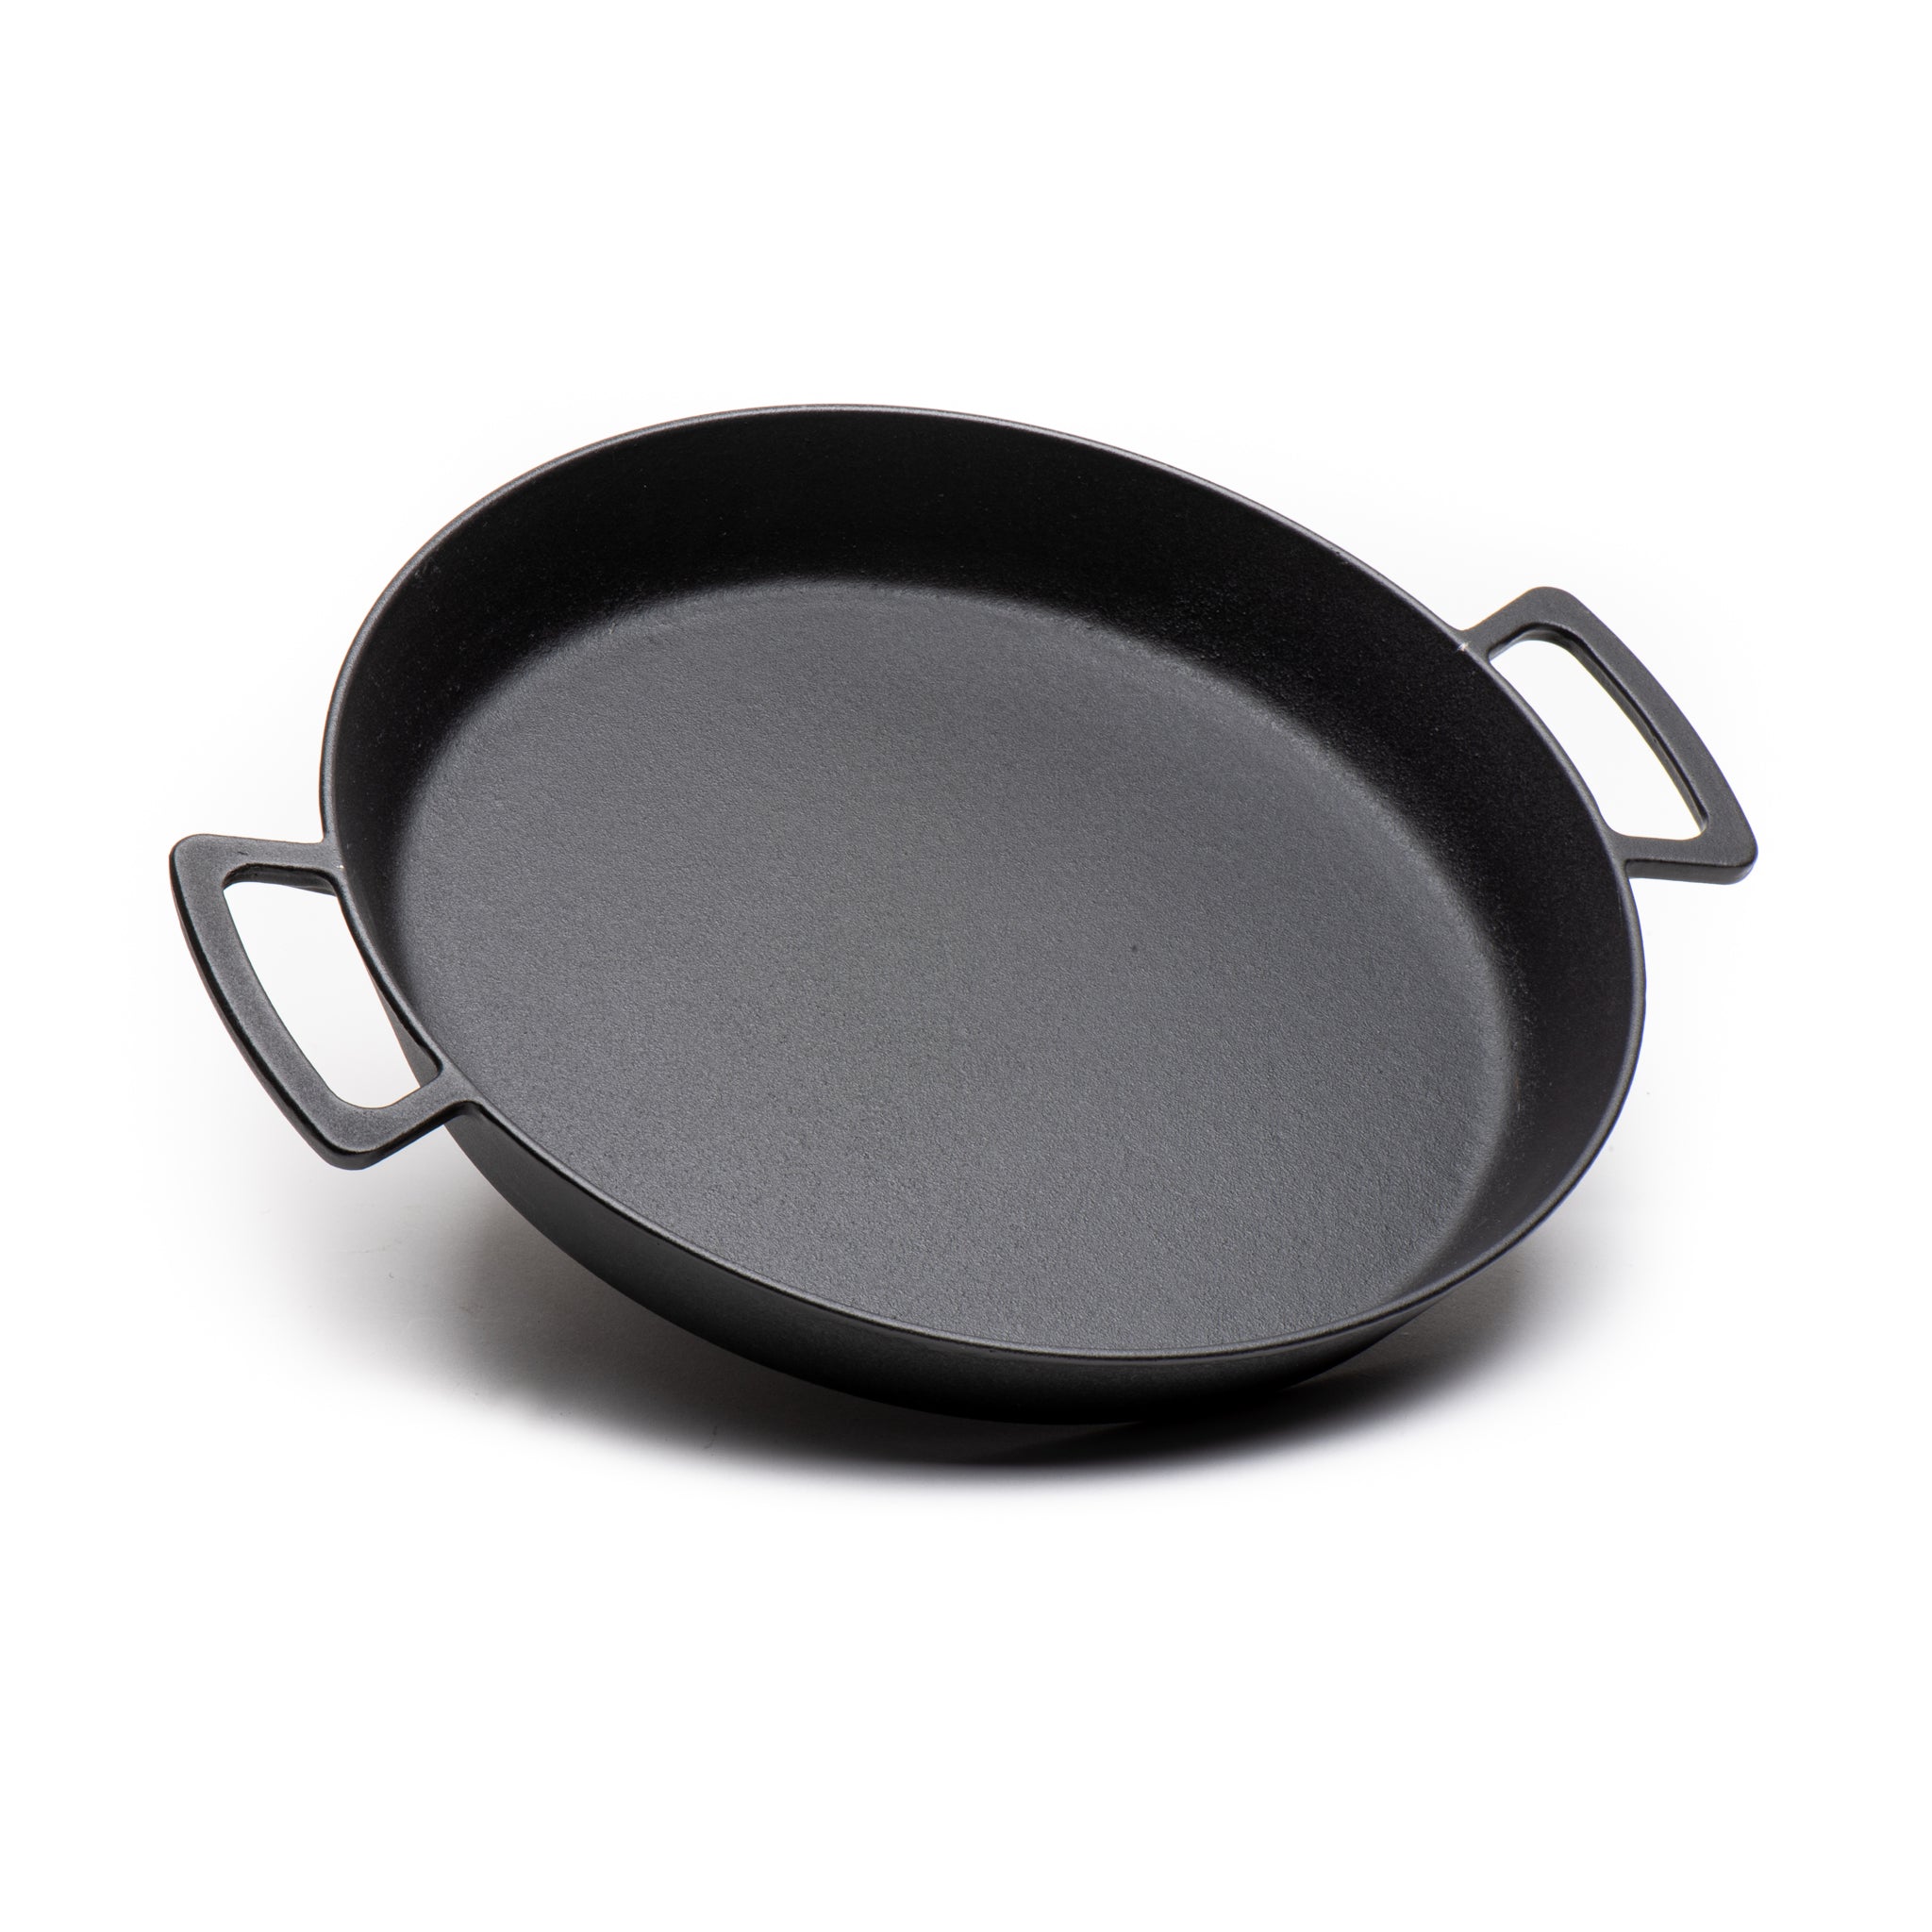 Paella/Skillet Pan